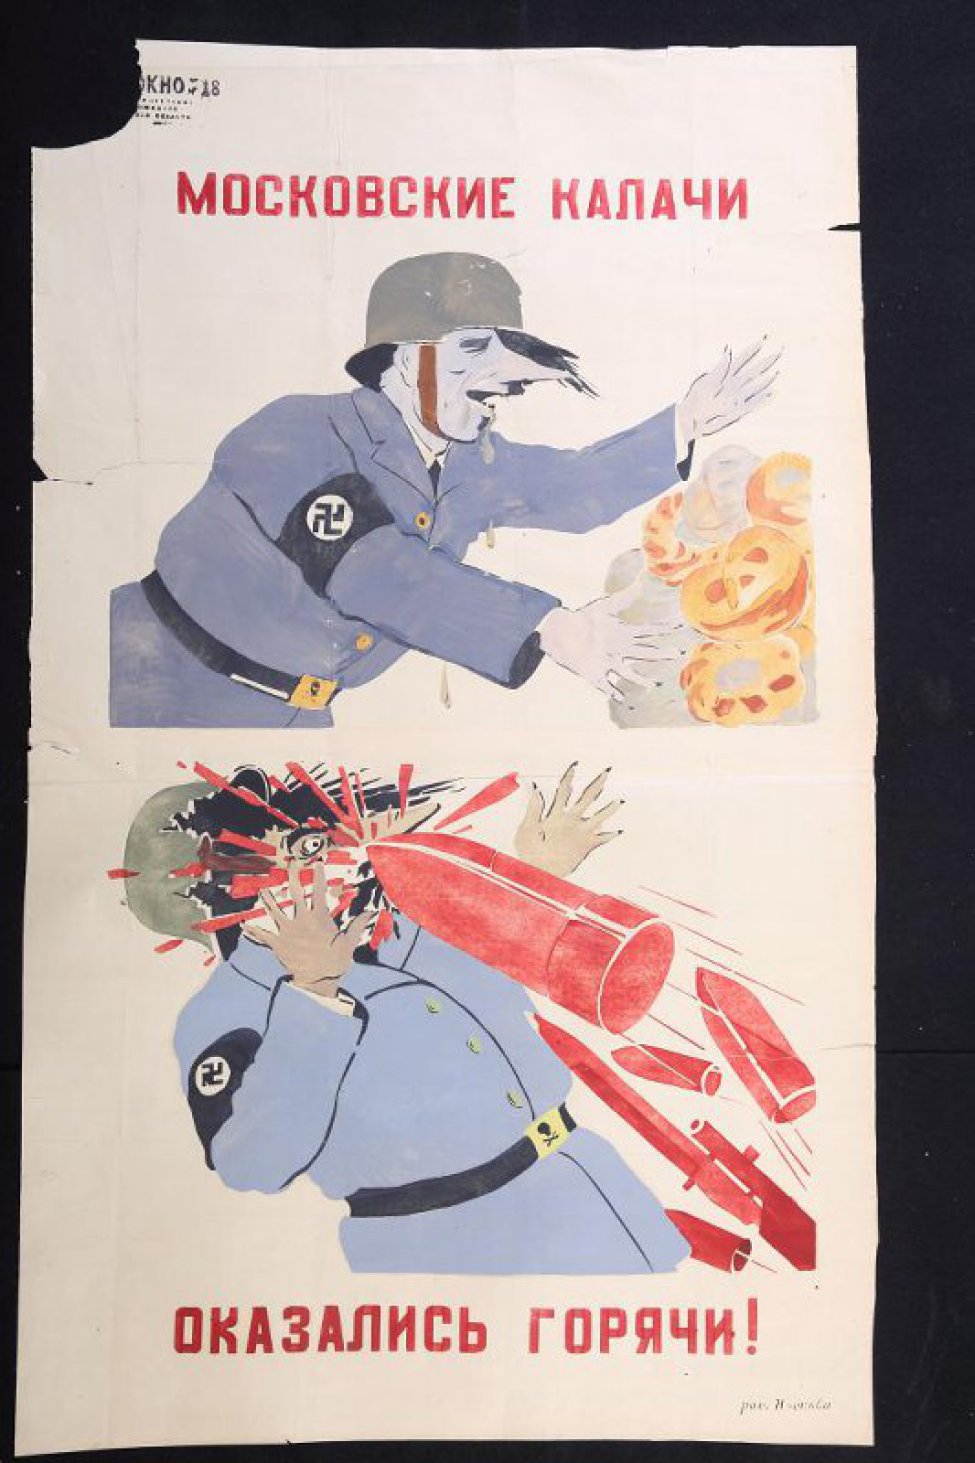 Изображено: фашист, хватающий калачи; фнизу лицо фашиста разбито летящими советскими снарядами, текст:" оказались горячи".